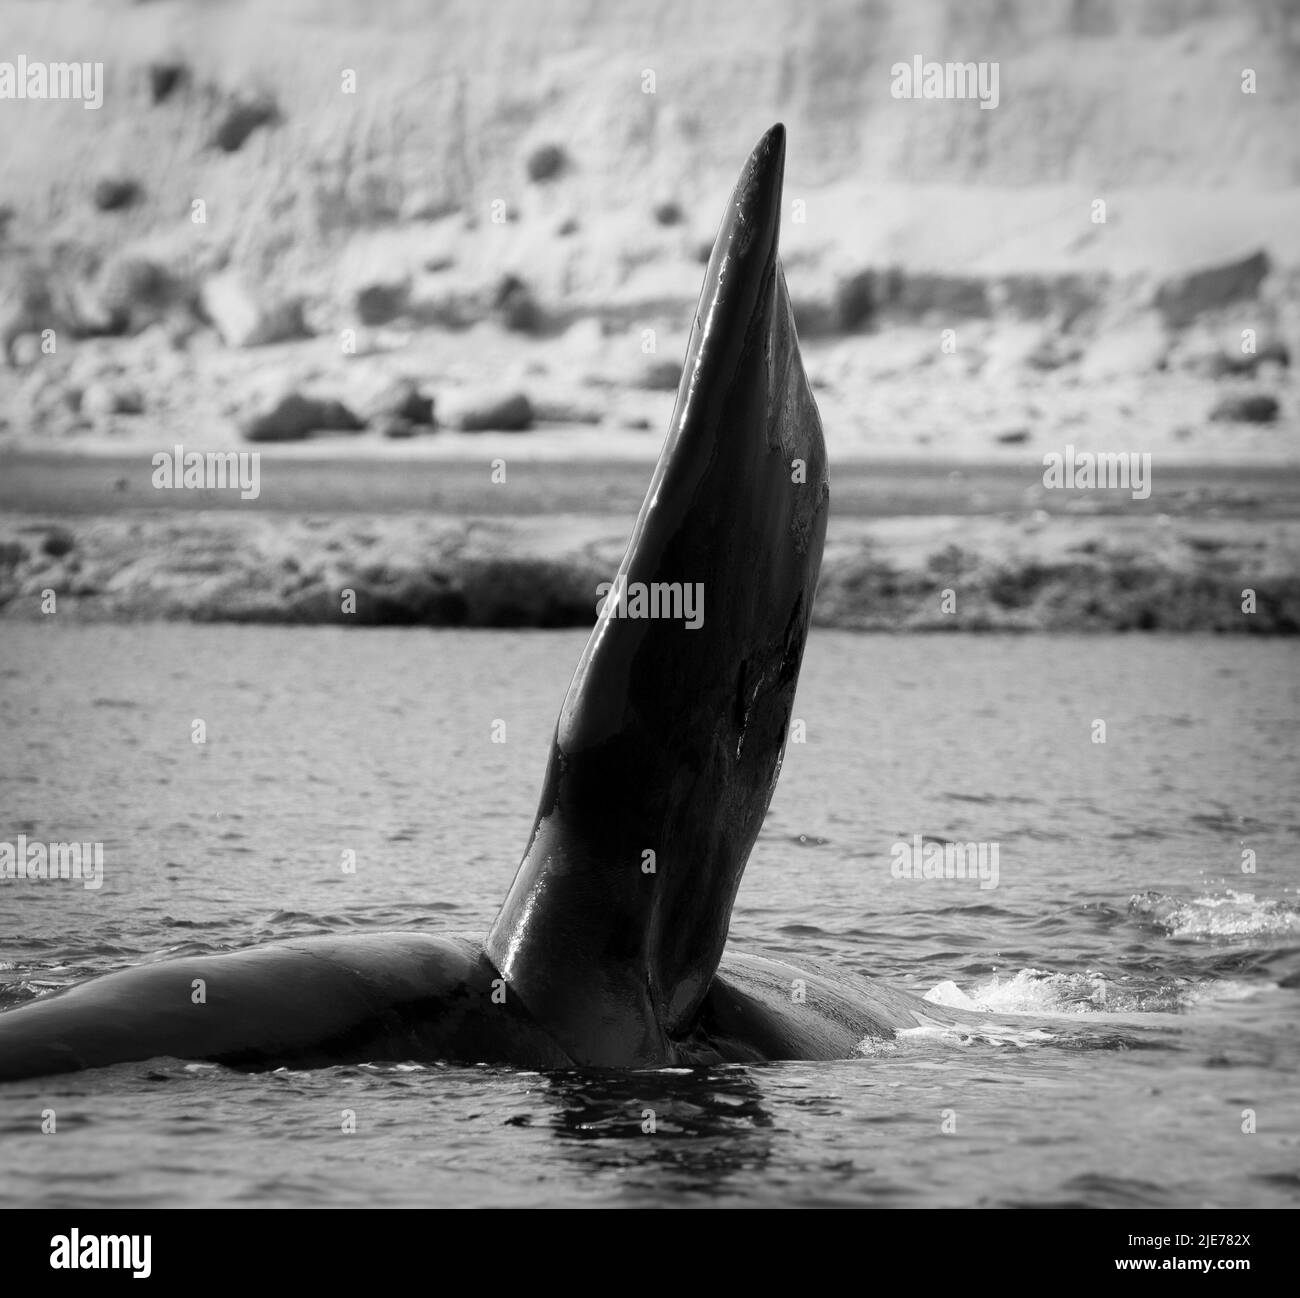 Baleine noire méridionale, Péninsule de Valdes, site classé au patrimoine mondial de l'UNESCO, Patagonie, Argentine. Banque D'Images